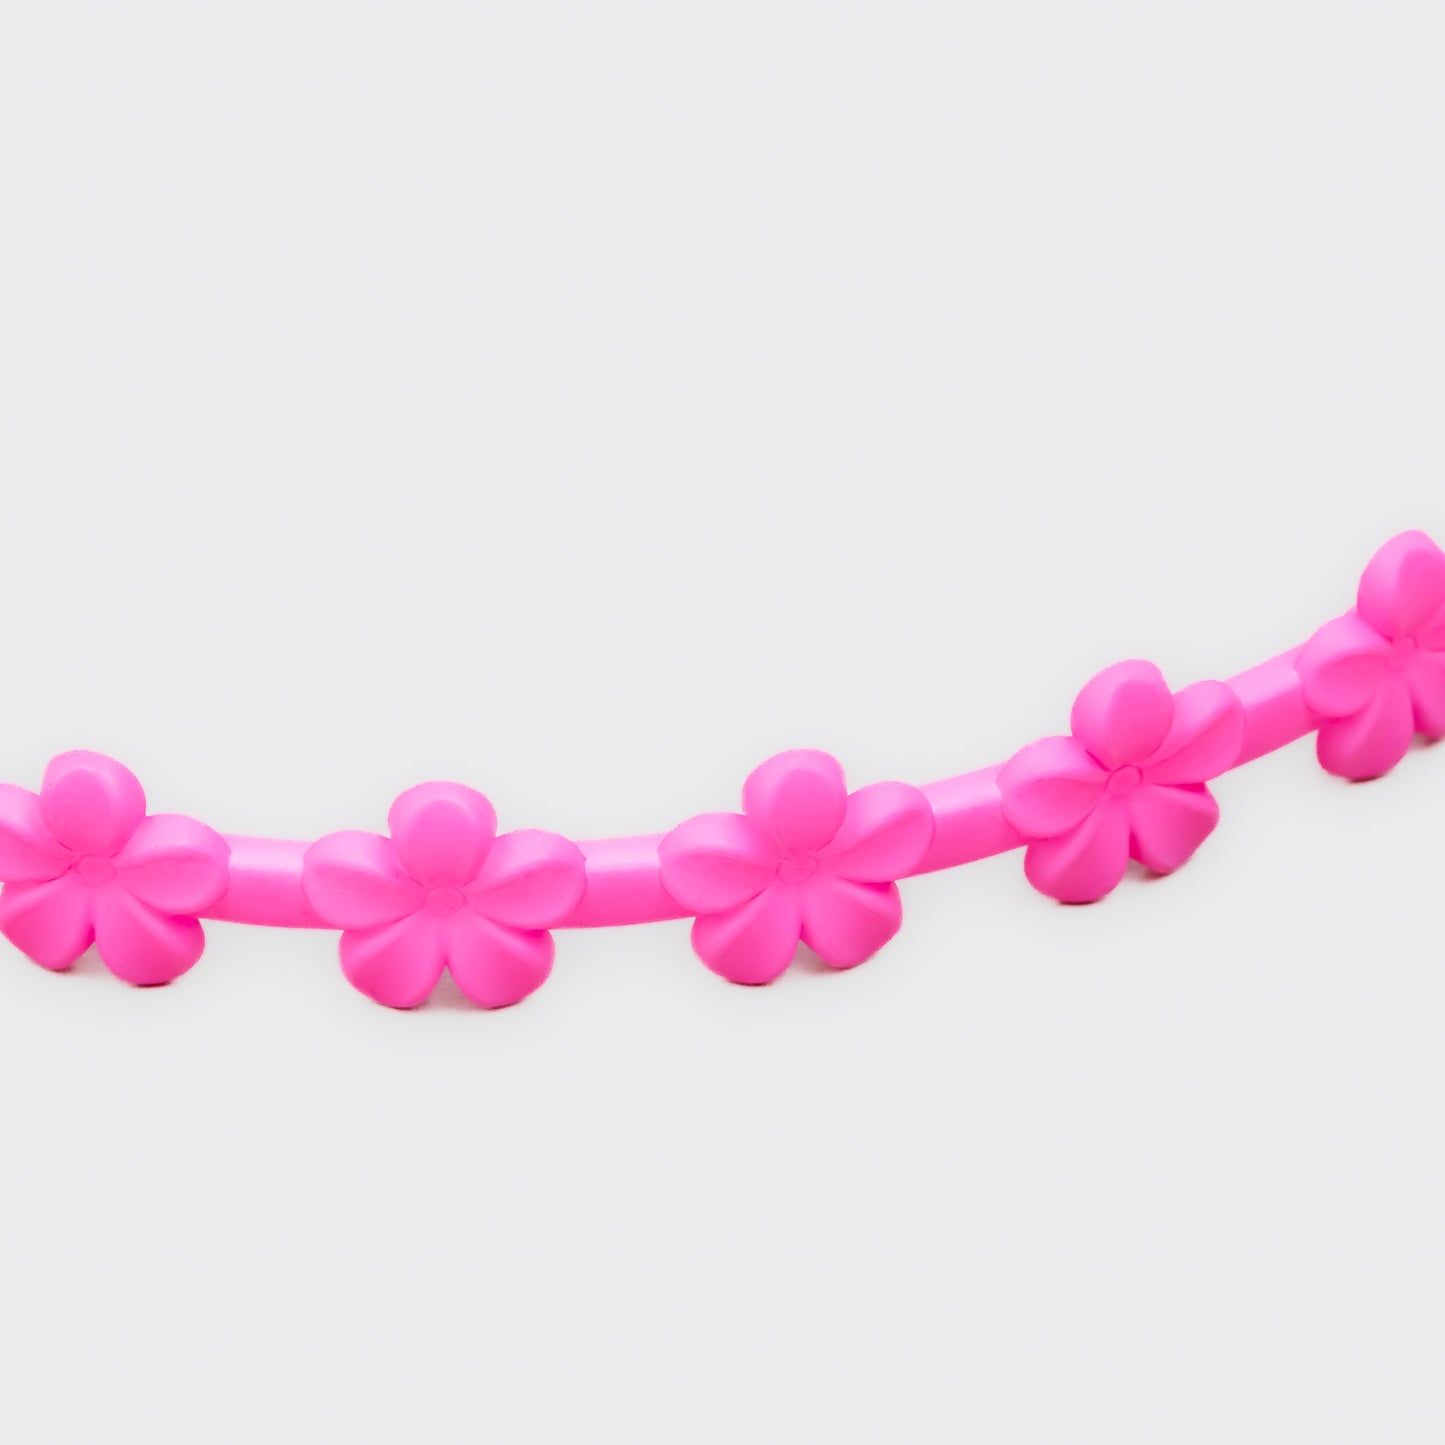 Cordeluțe subțiri cu floricele și textură de silicon, set 3 buc - Roz, Roșu